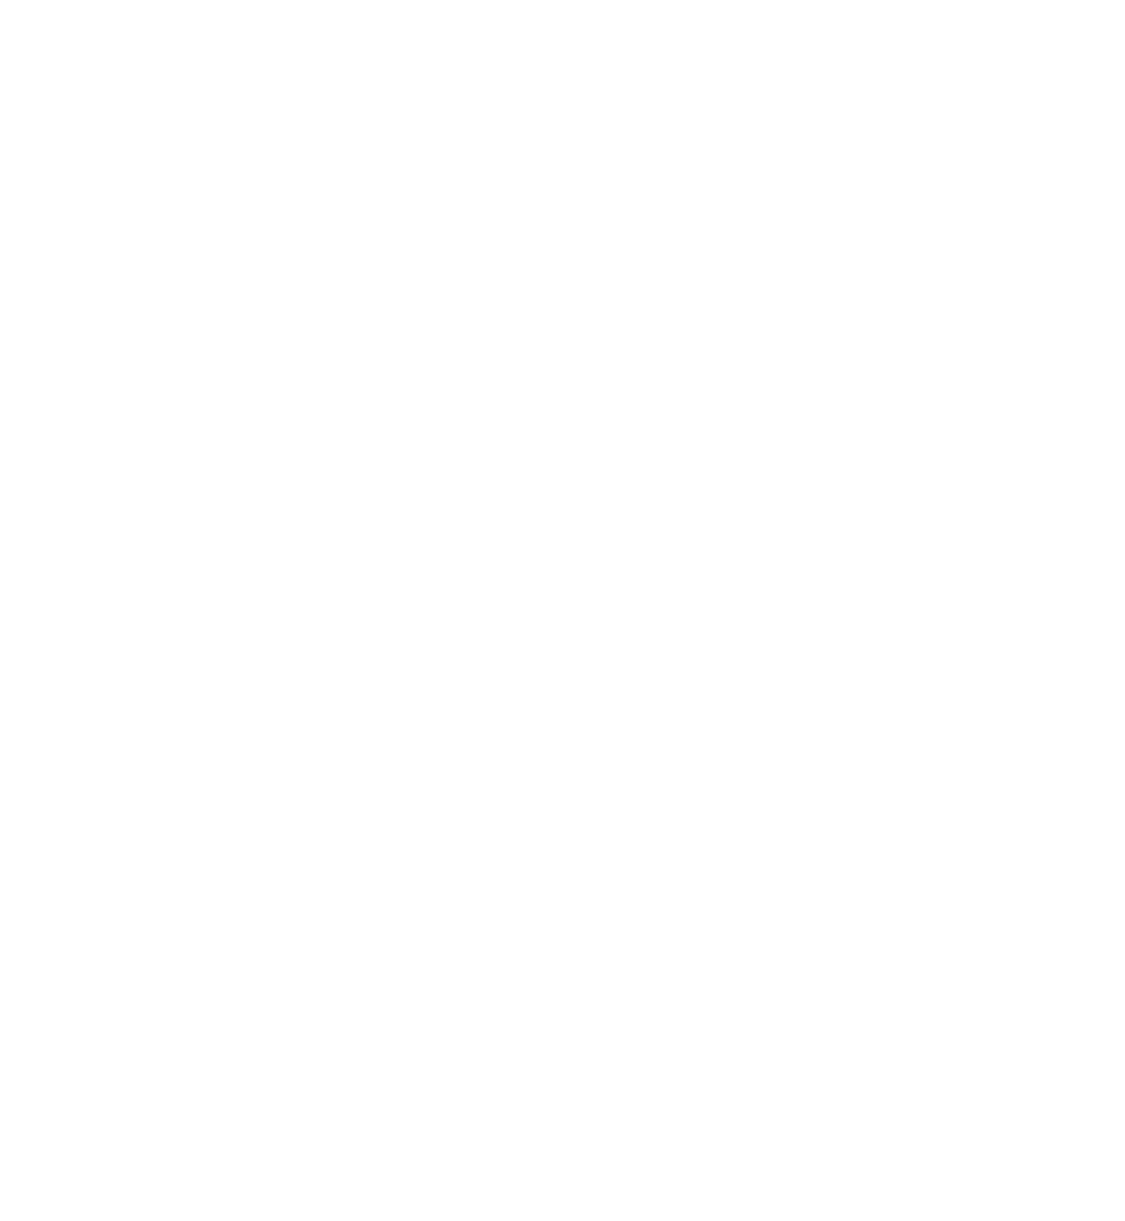 342D_Visual Designer